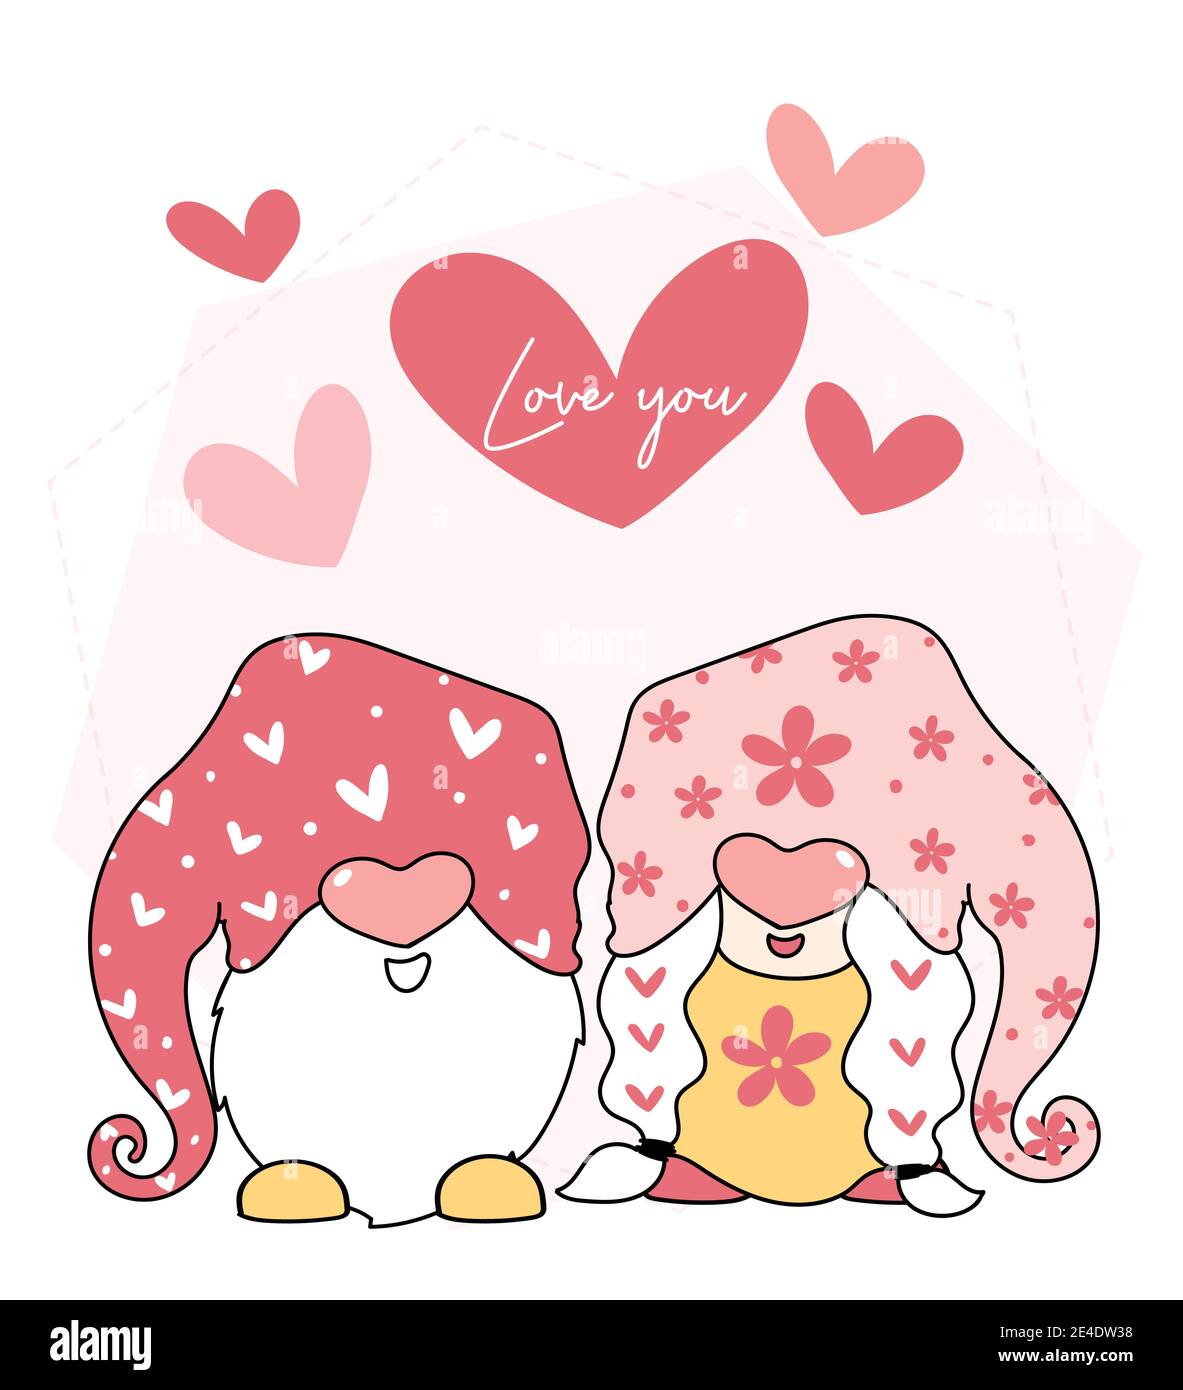 Adorable ensemble d'amour de Gnome de Saint-Valentin, avec ballon de coeur, lettre d'amour, dessin animé à vecteur plat Illustration de Vecteur